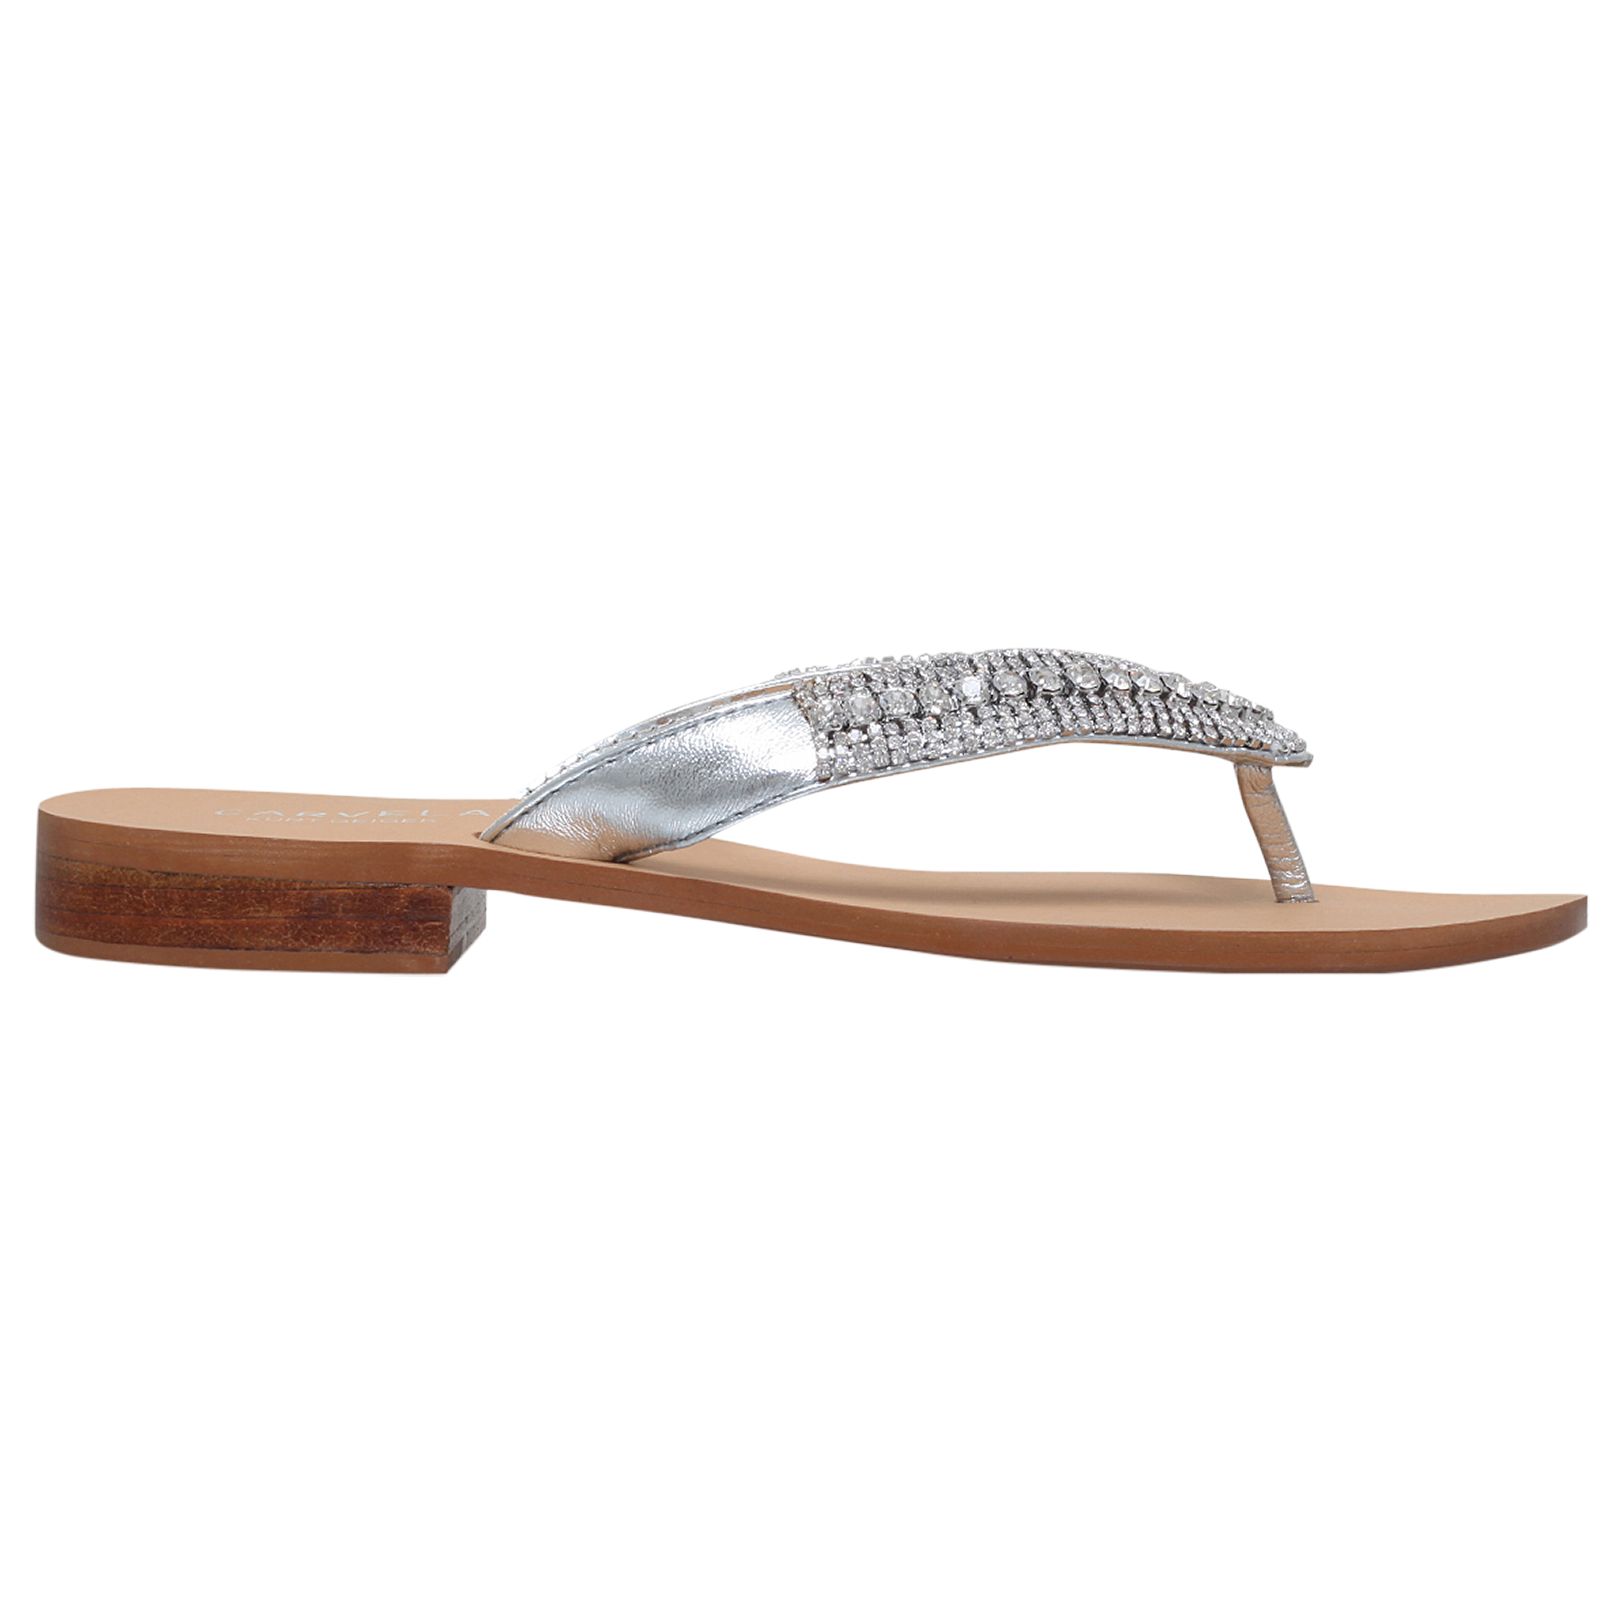 Carvela Breanne 2 Embellished Flat Sandals, Silver Leather